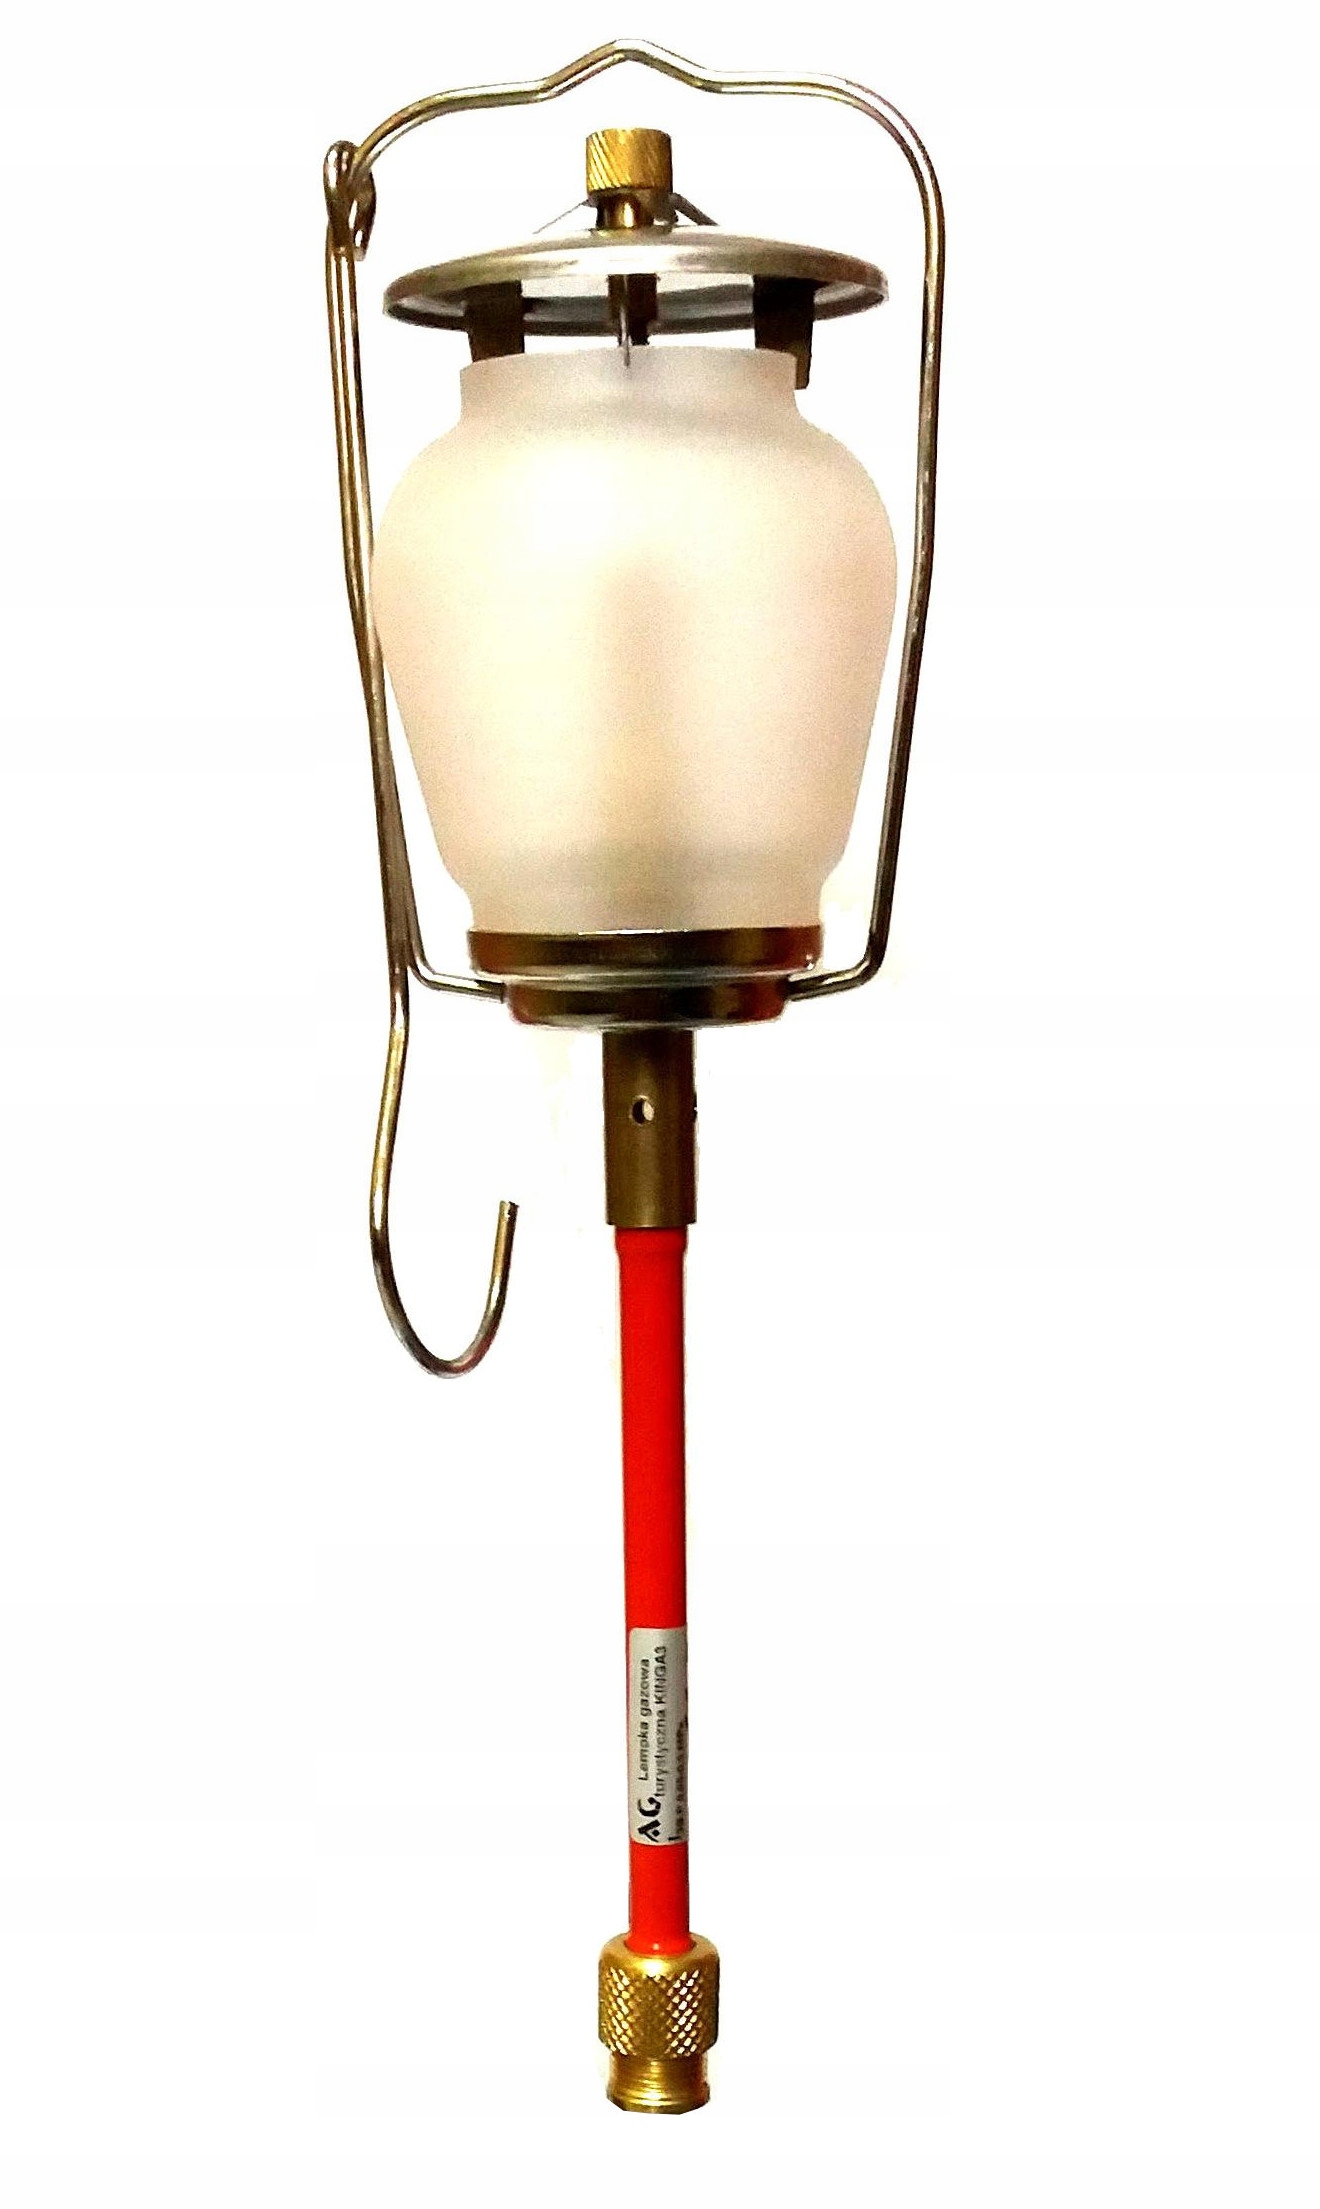 LAMPKA LAMPA GAZOWA TURYSTYCZNA NA BUTLE GAZ KLOSZ - brak - 11575932792 -  Allegro.pl